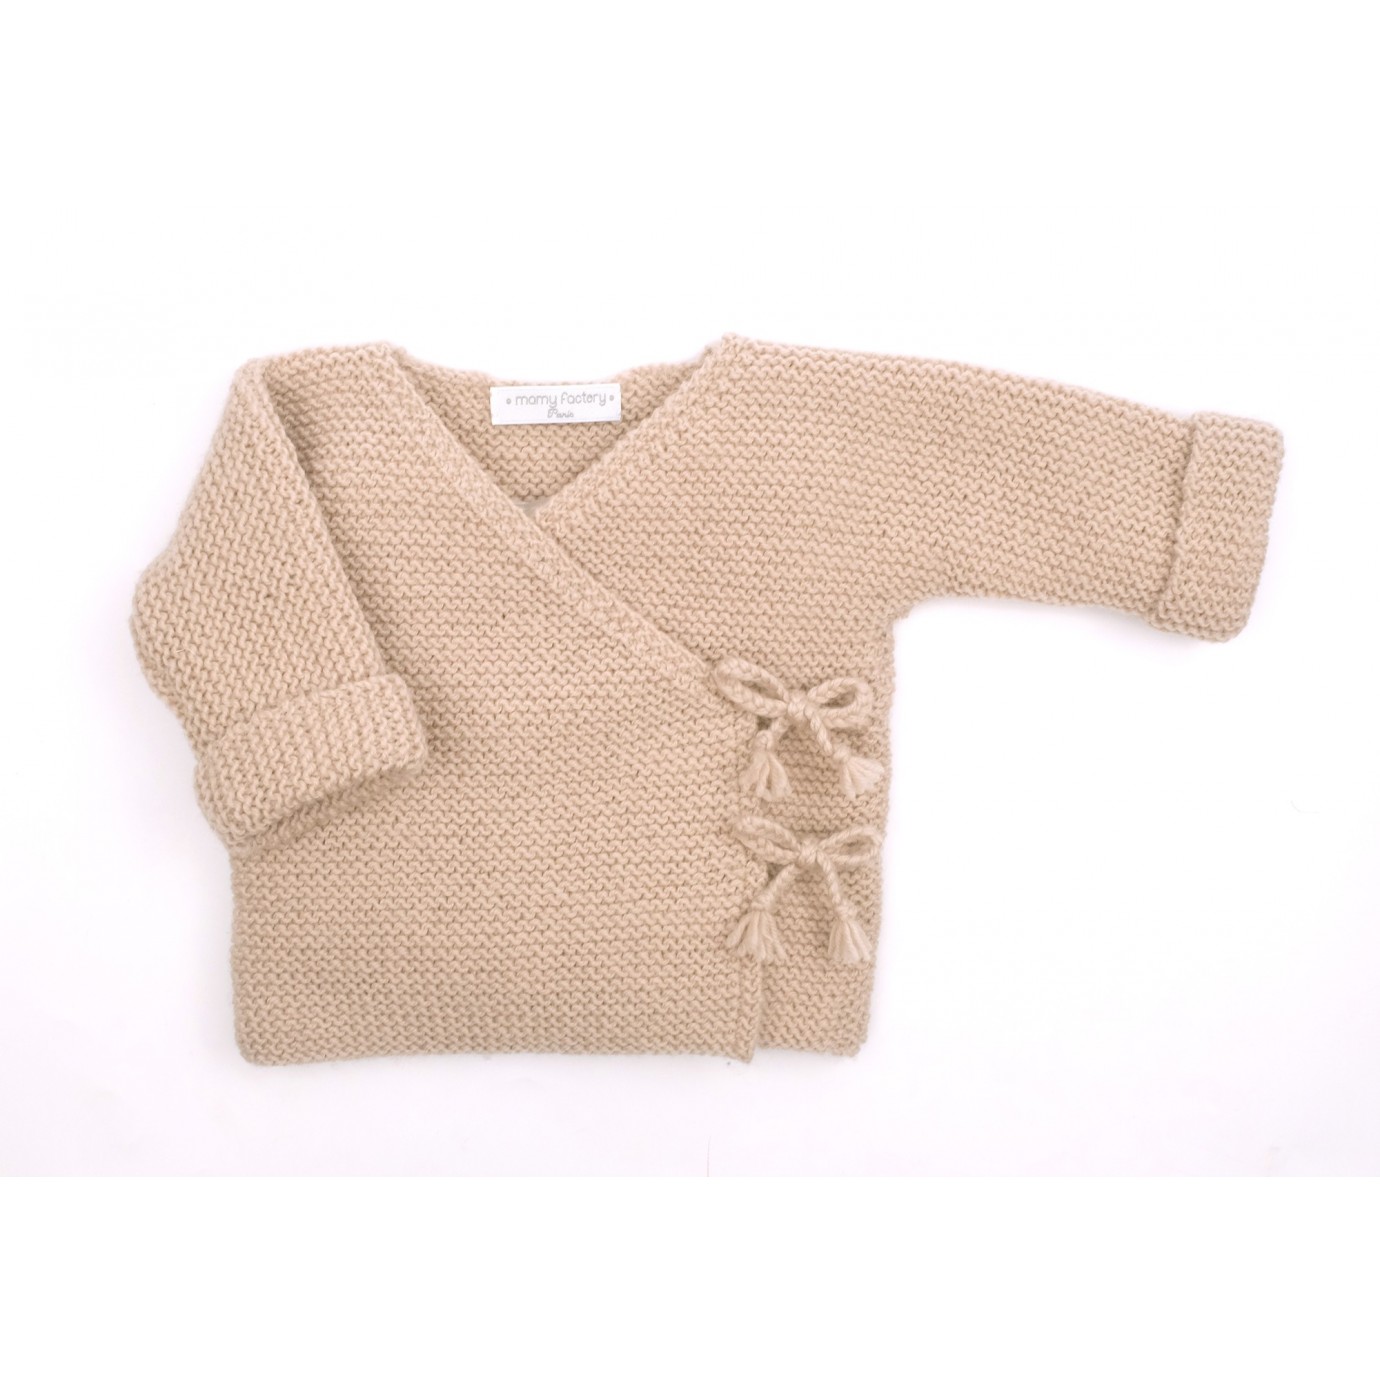 Brassière bébé cache coeur naissance, layette tricotée main en laine  mérinos céladon et boutons bois -  France